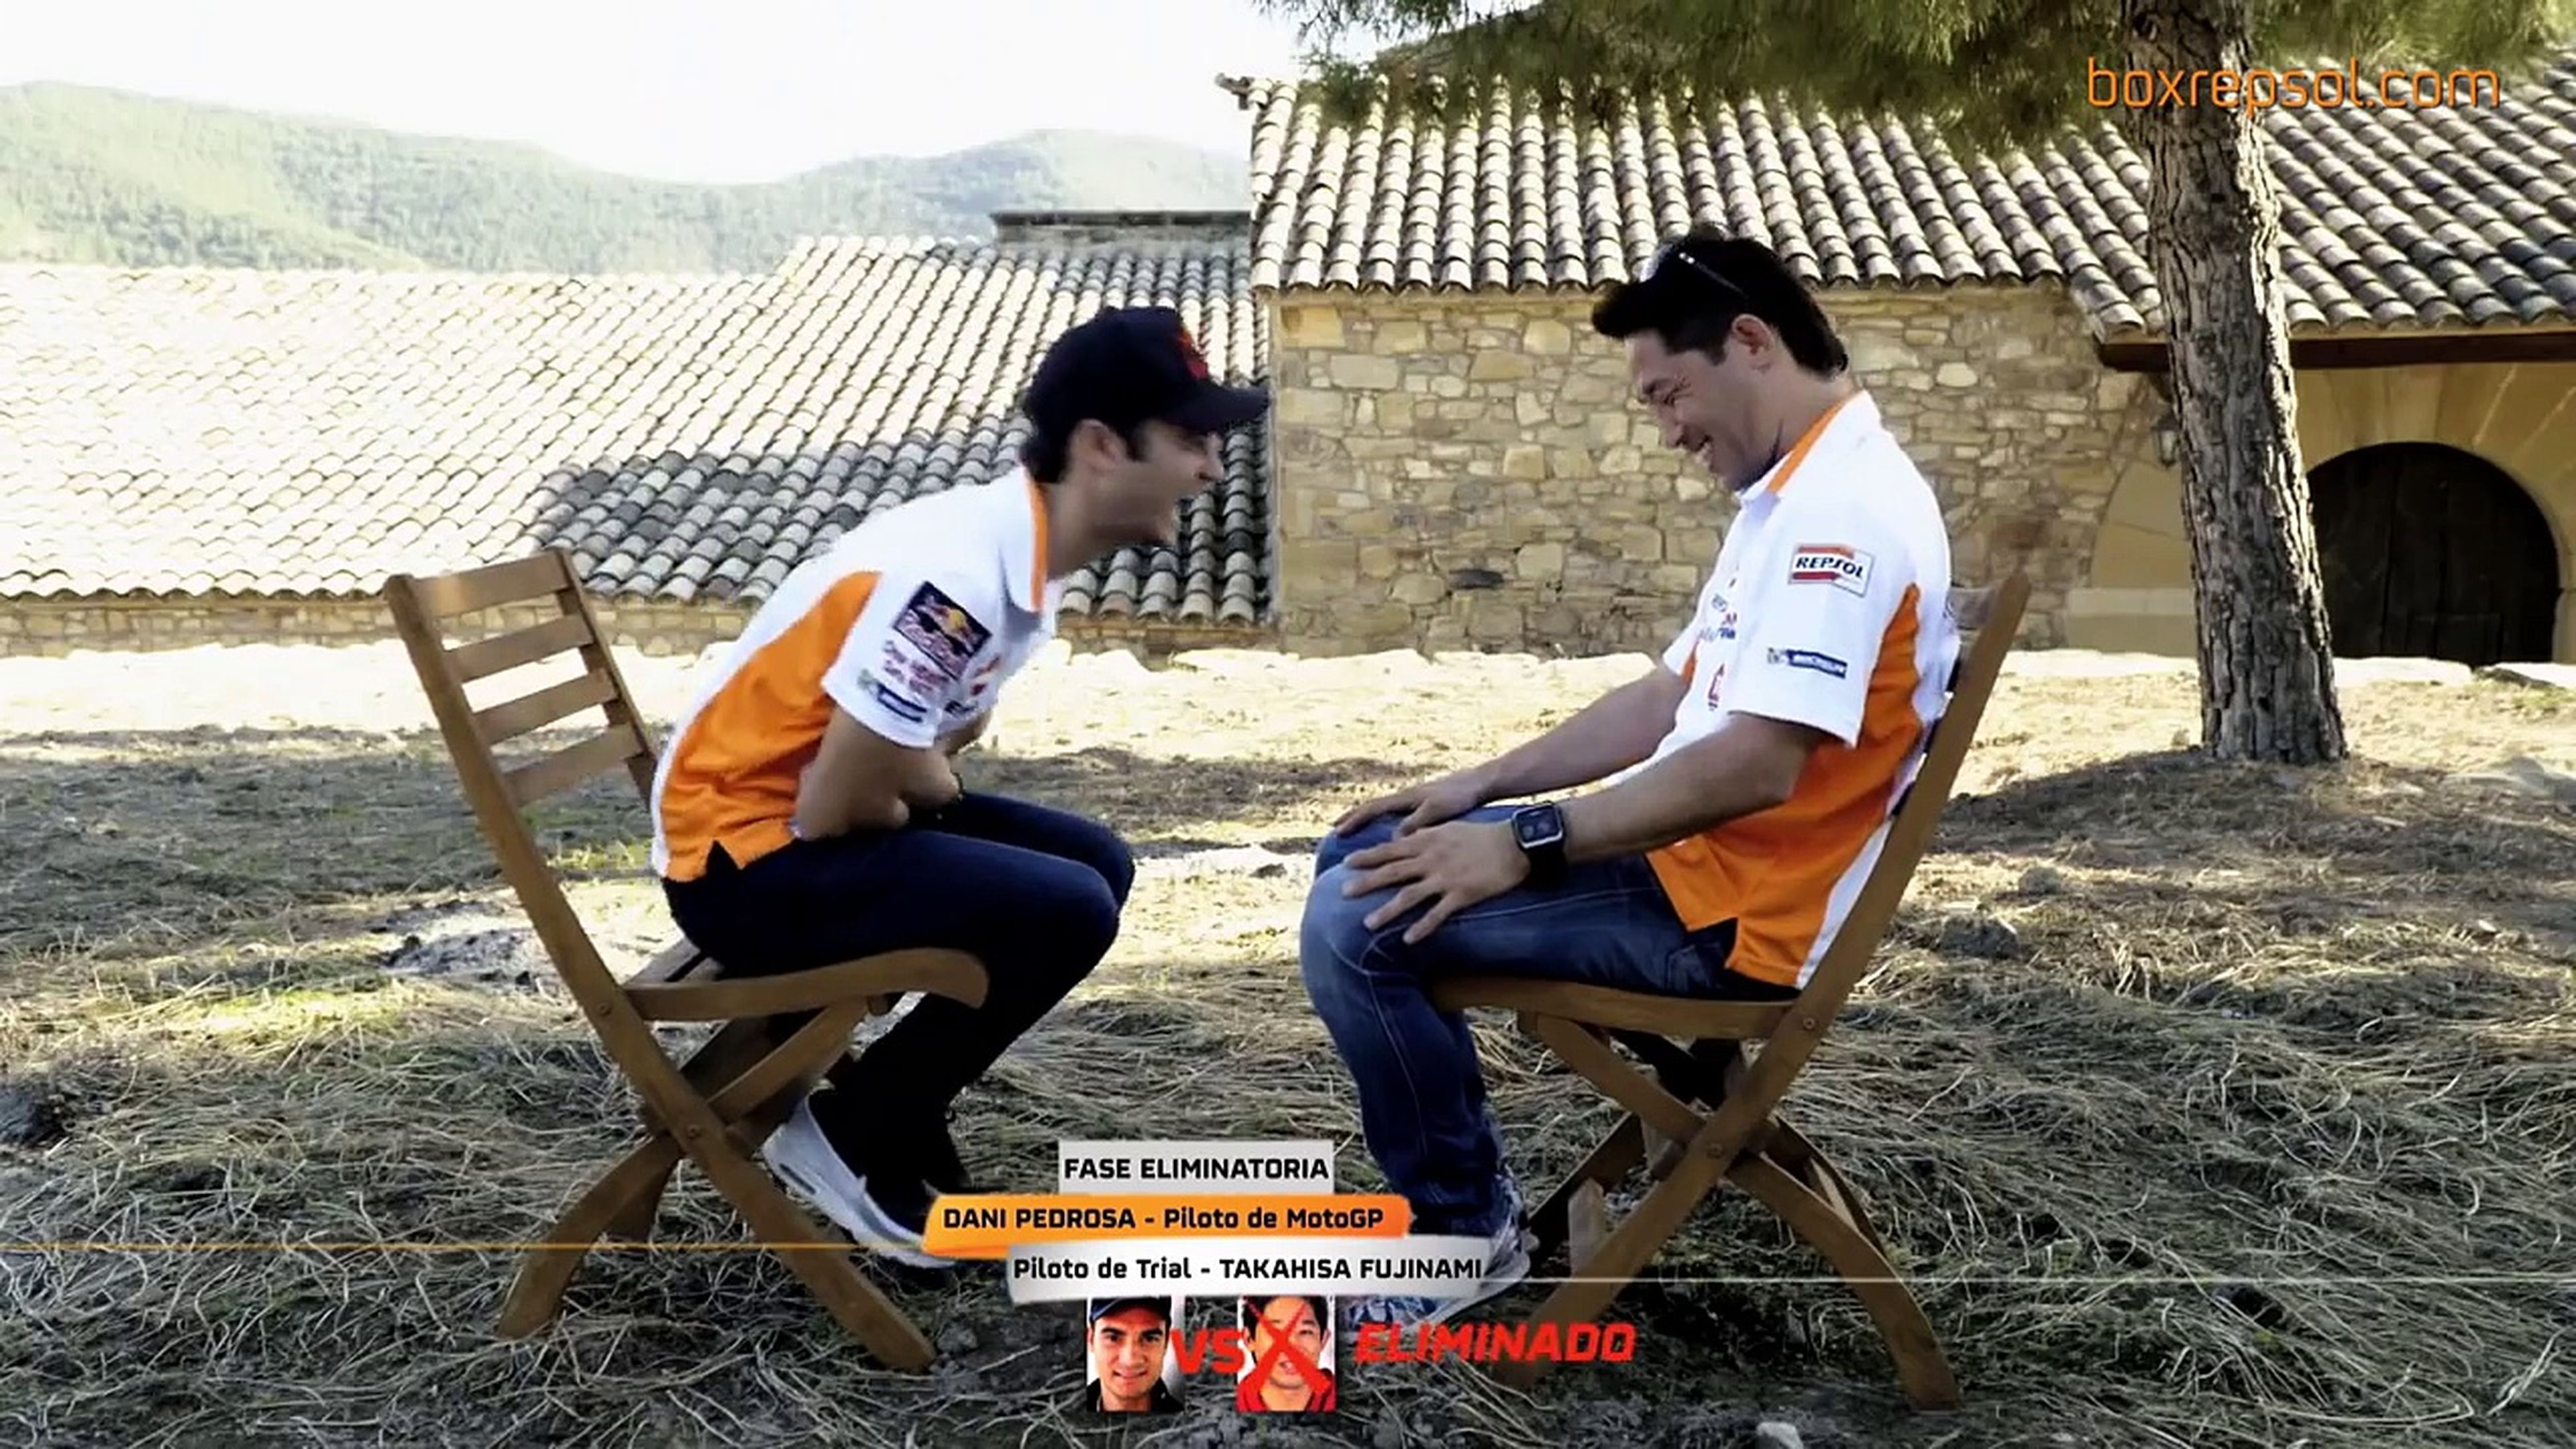 VÍDEO: ¿Márquez y Pedrosa a prueba de risas? Pierden seguro... [TG]